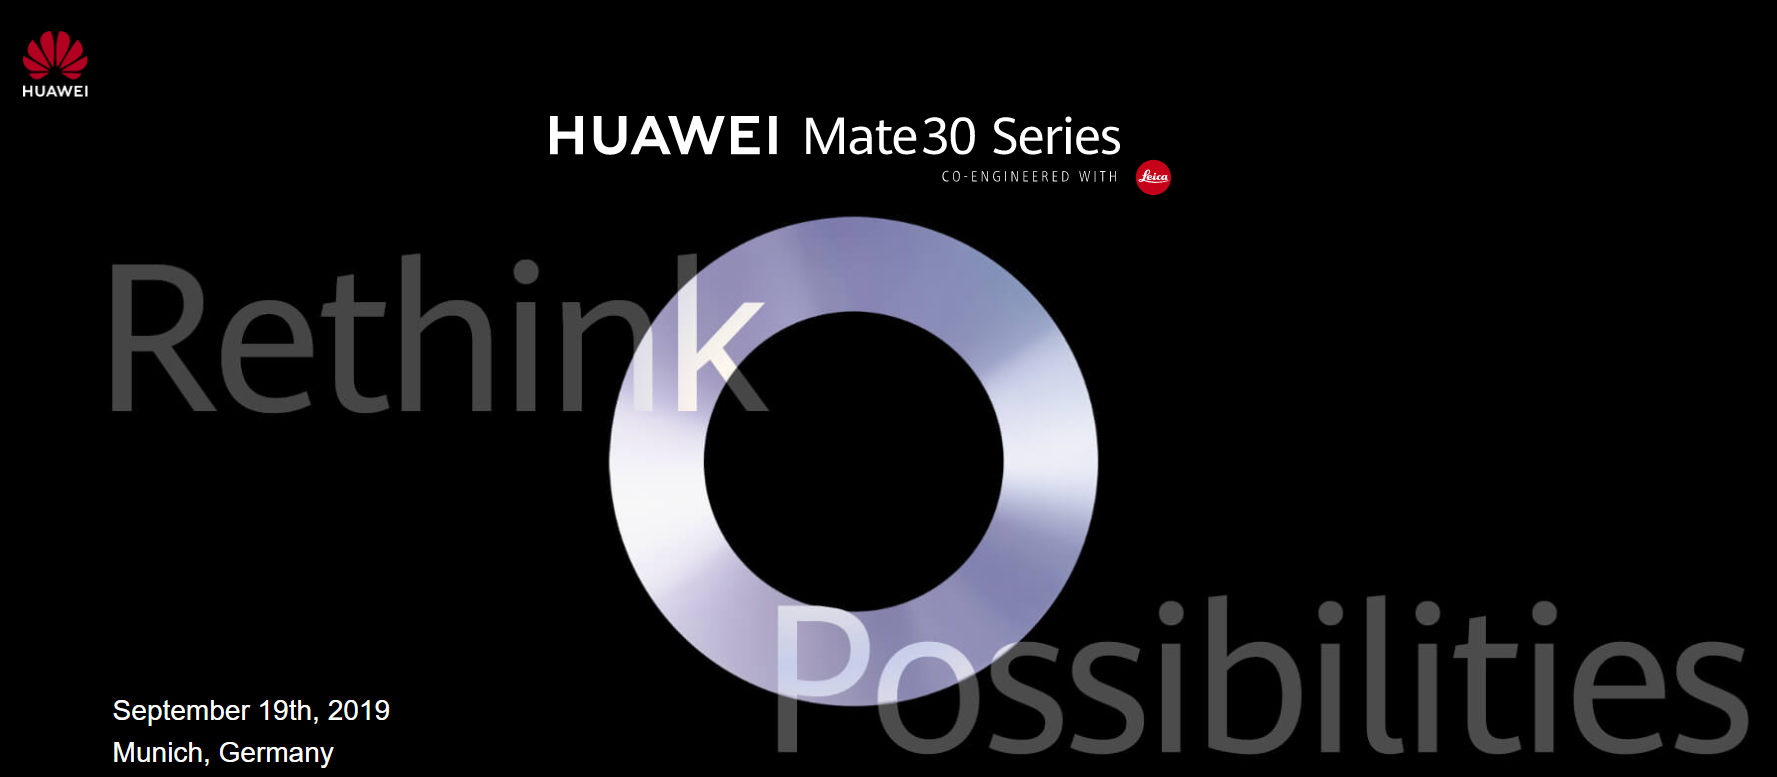 【快訊報報】華為 HUAWEI Mate30 系列新機 將在 9/19 德國慕尼黑發表 - HUAWEI 華為 - 科技狗 3C DOG